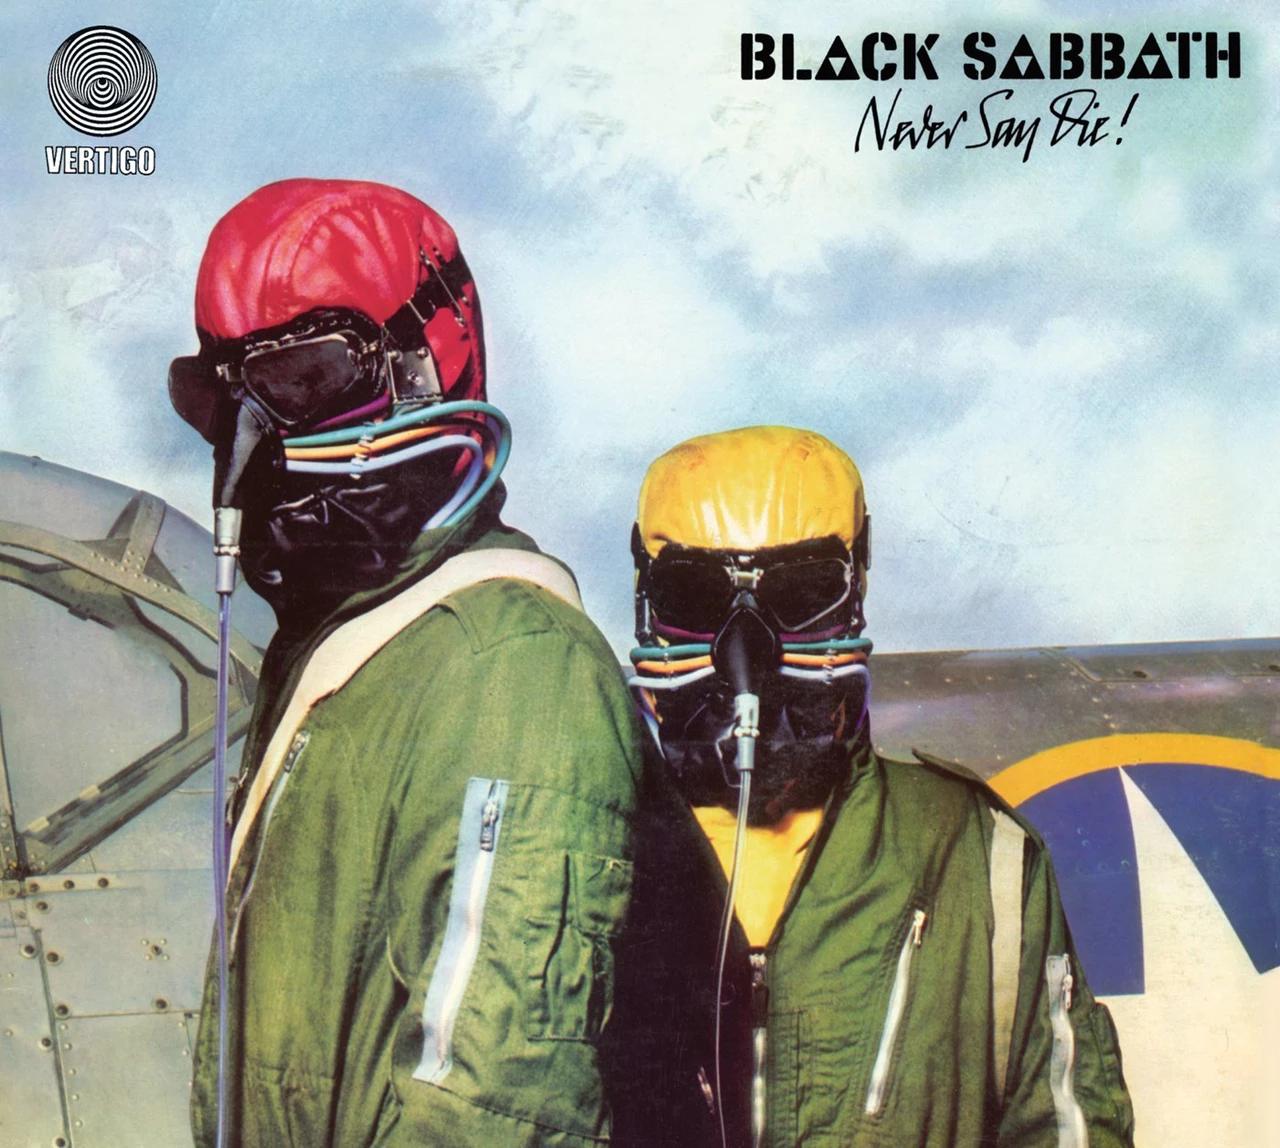 Never Say Die! by Black Sabbath